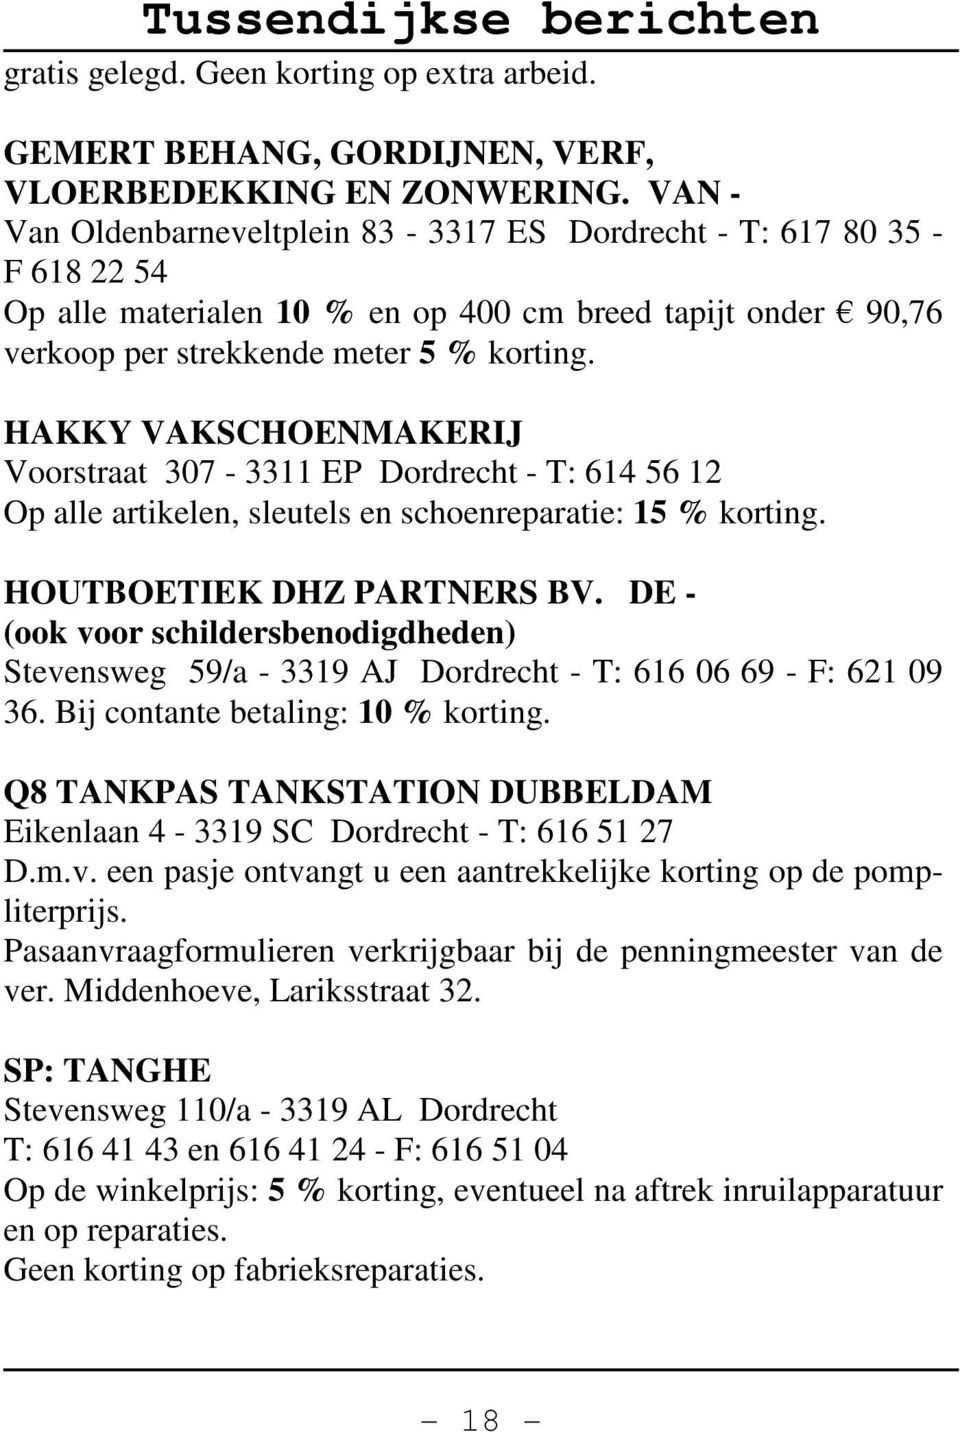 HAKKY VAKSCHOENMAKERIJ Voorstraat 307-3311 EP Dordrecht - T: 614 56 12 Op alle artikelen, sleutels en schoenreparatie: 15 % korting. HOUTBOETIEK DHZ PARTNERS BV.